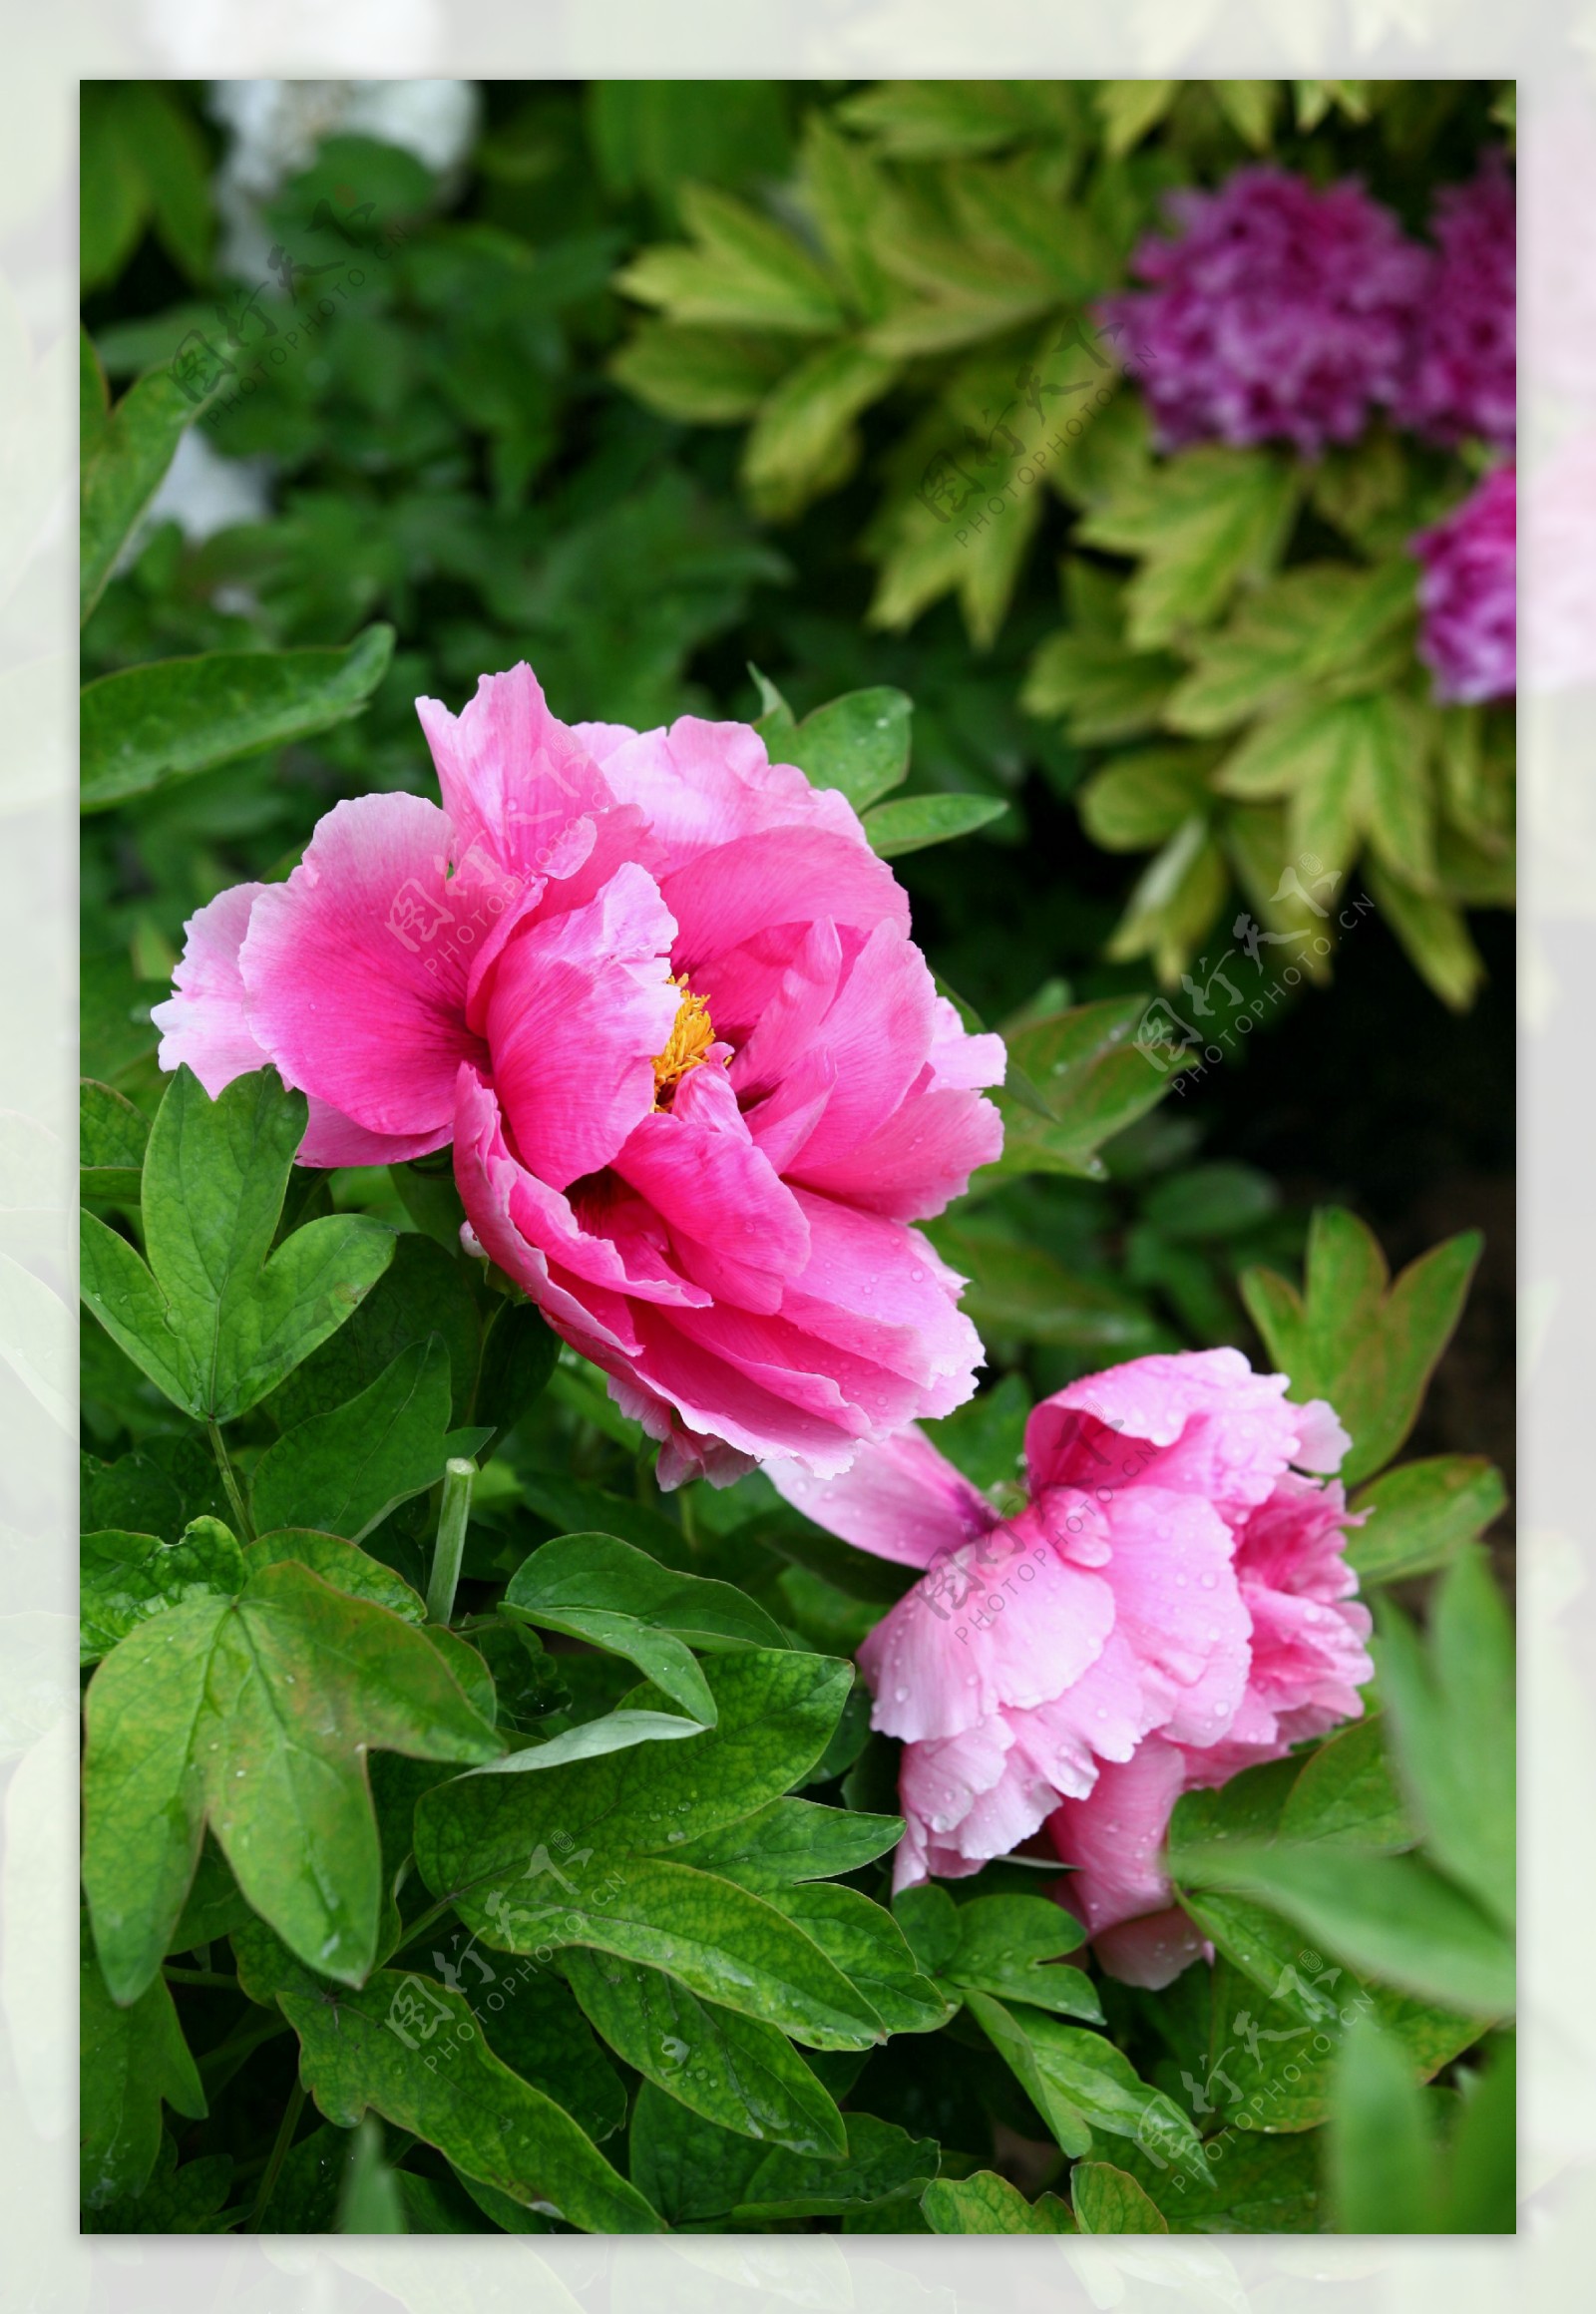 雨后两簇粉红色牡丹花